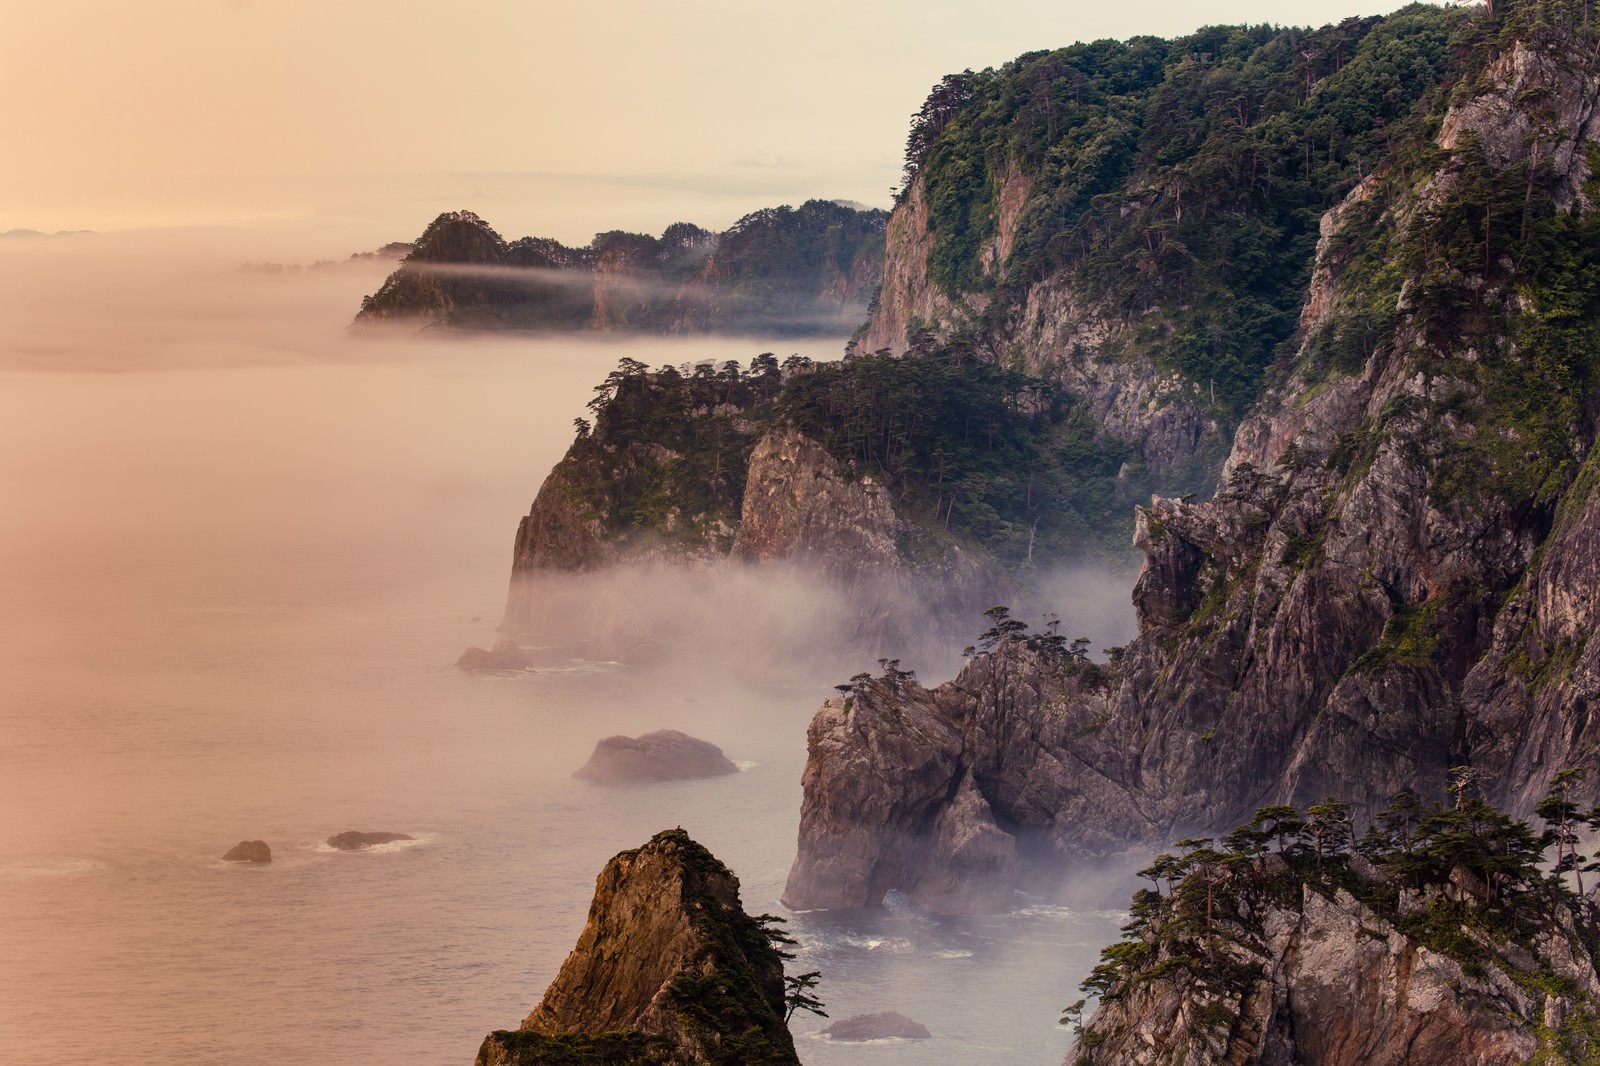 「朝霧残る北山崎の夜明け | フリー素材のぱくたそ」の写真